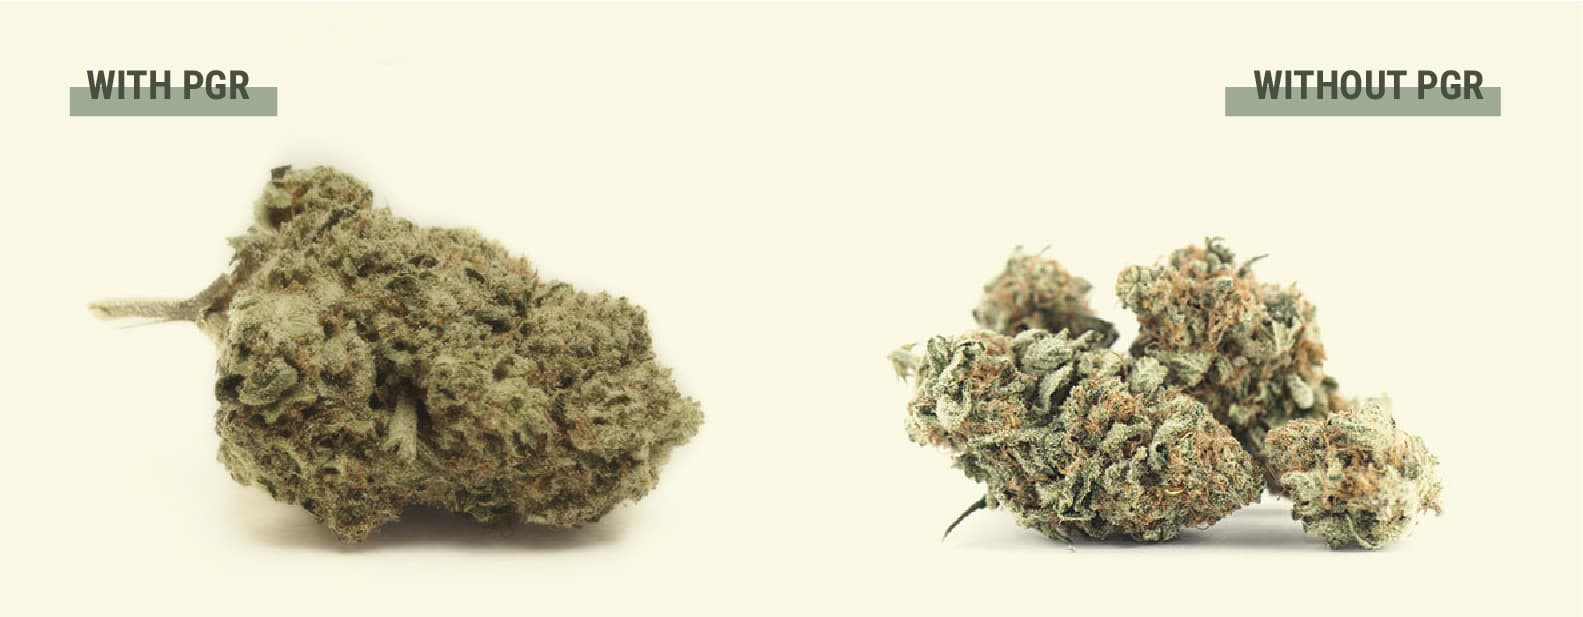 Cosa sono i PGR presenti nella cannabis?